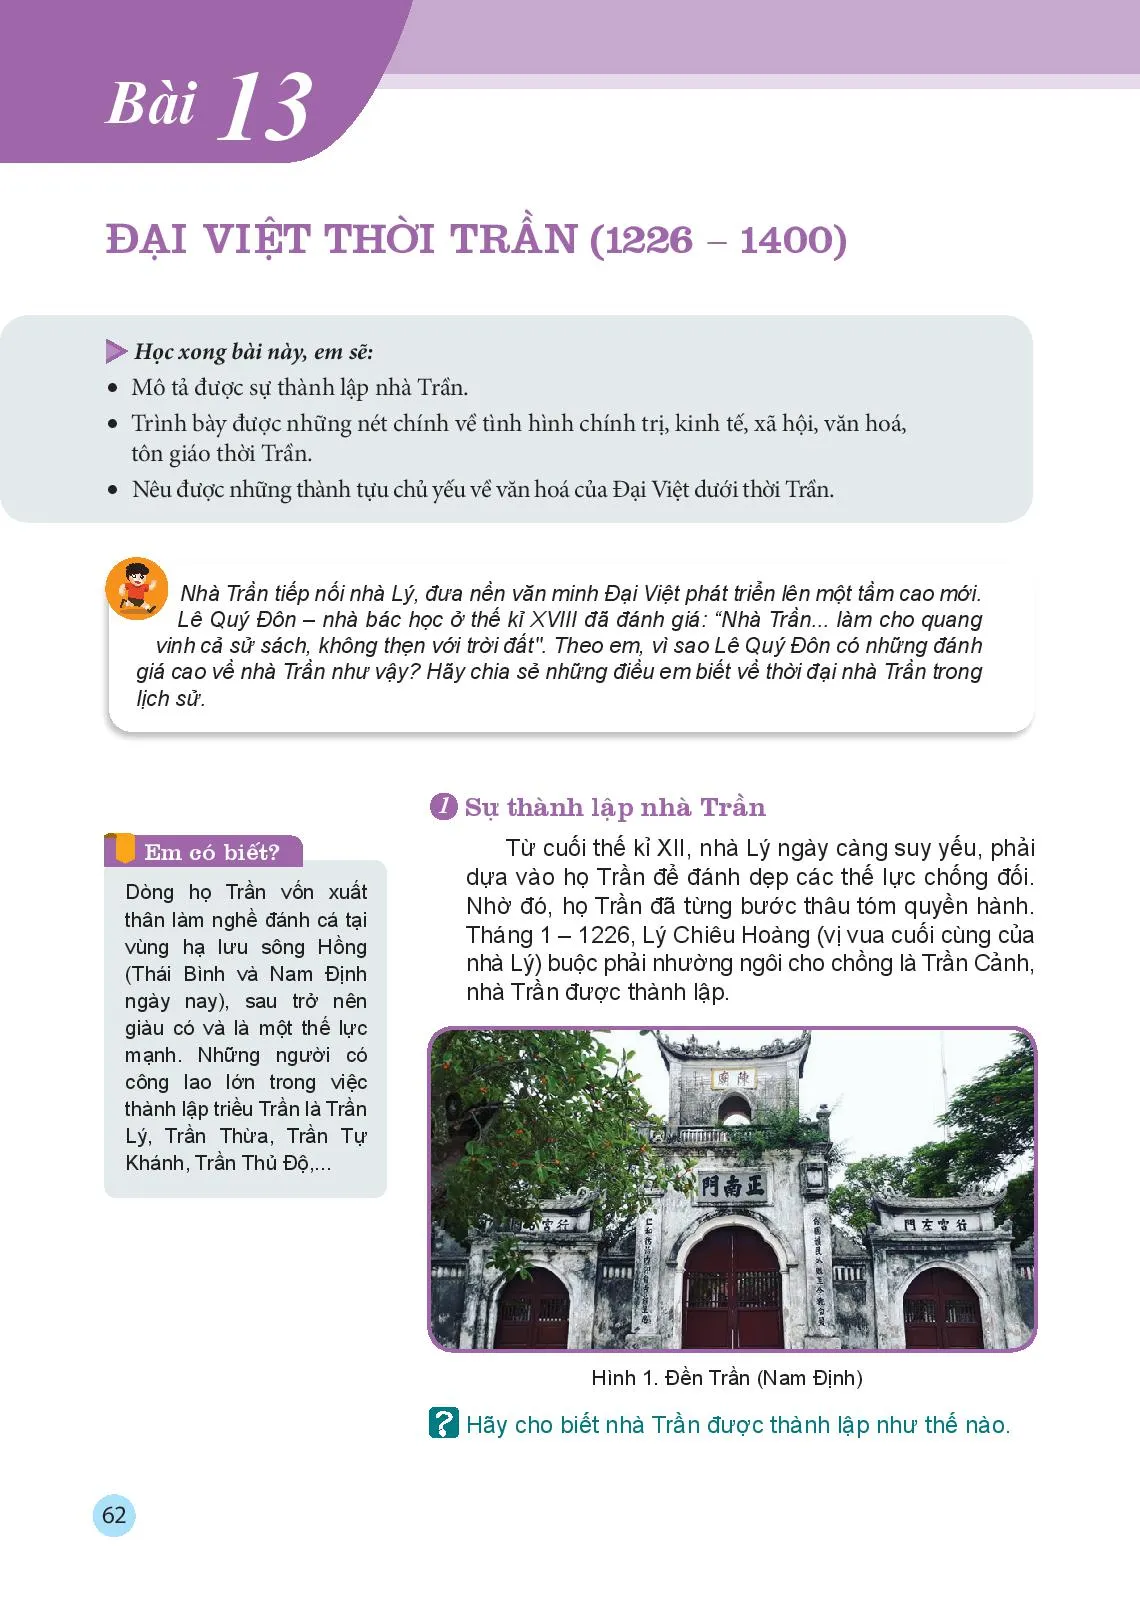 Bài 13 Đại Việt thời Trần (1226-1400)